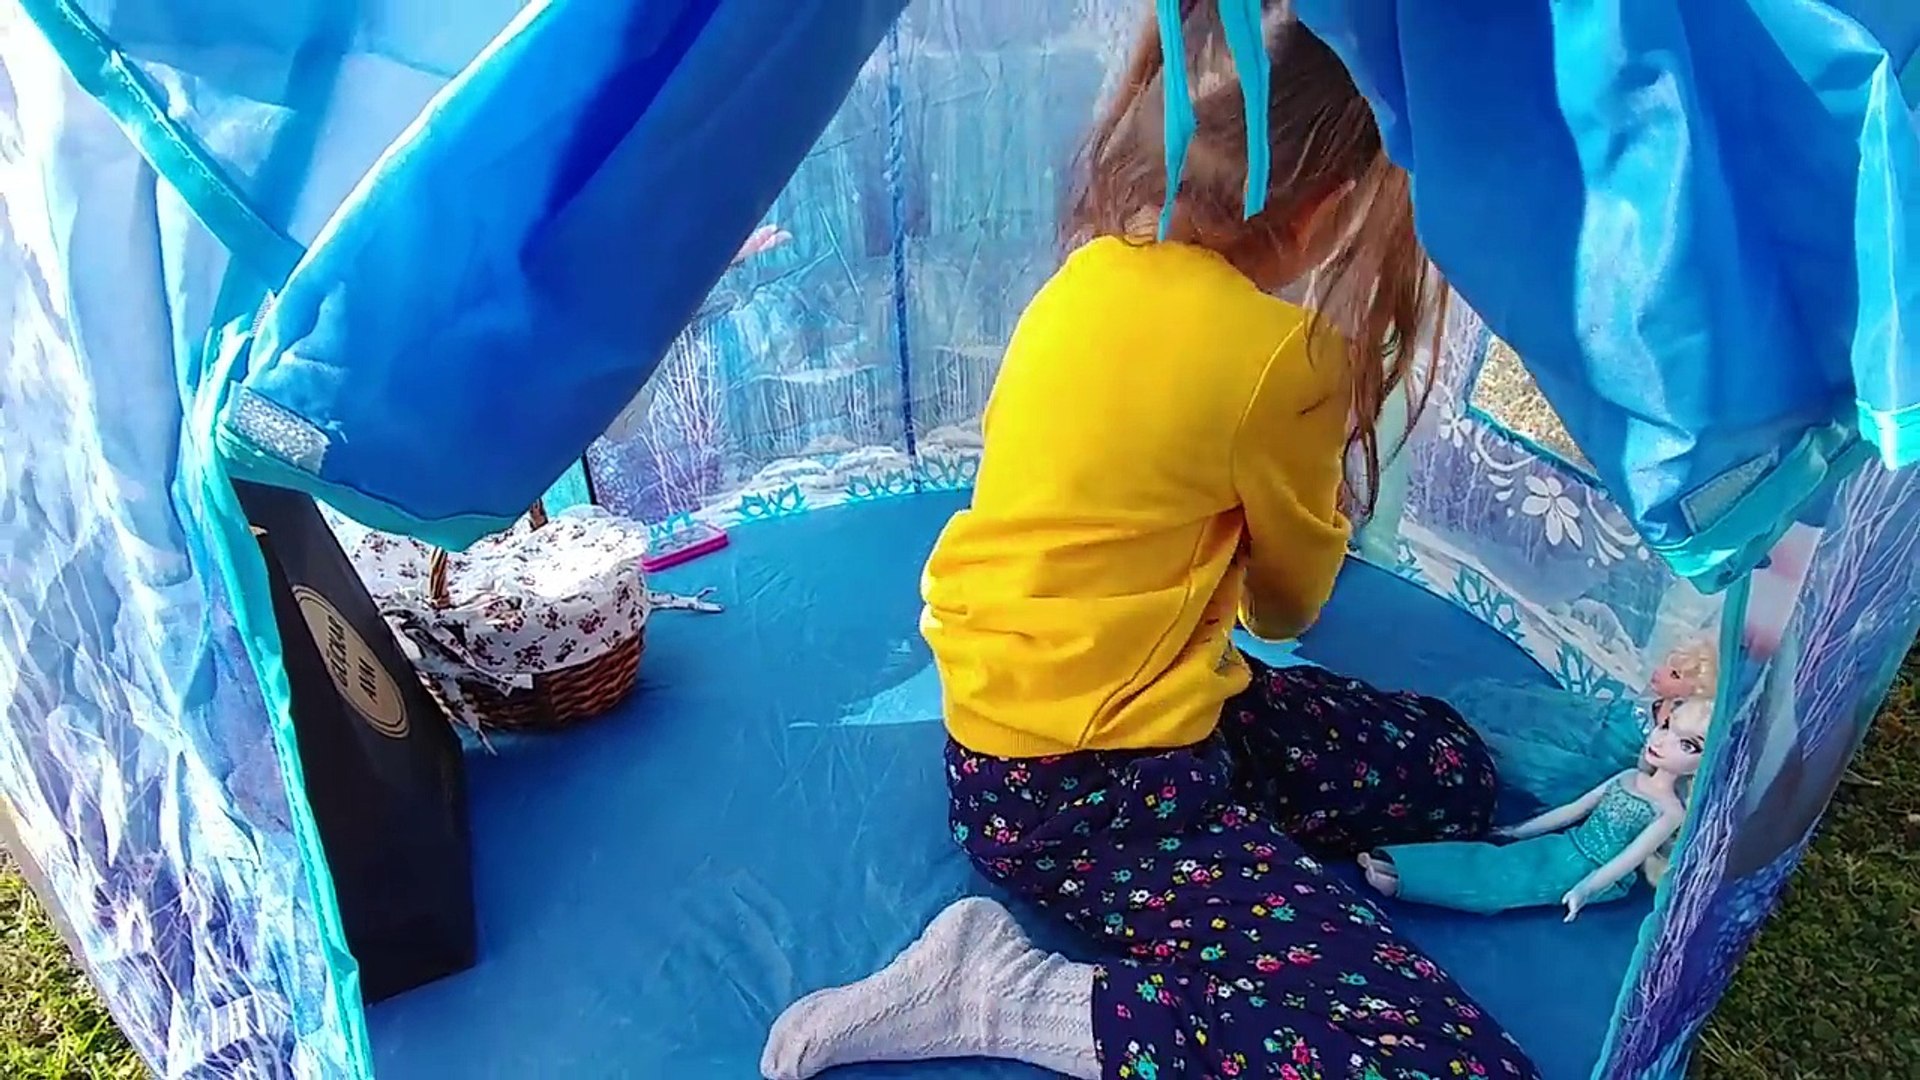 Elsa çadır bahçede,anna elsa elif piknik yapıyor, eğlenceli çocuk videosu -  Dailymotion Video